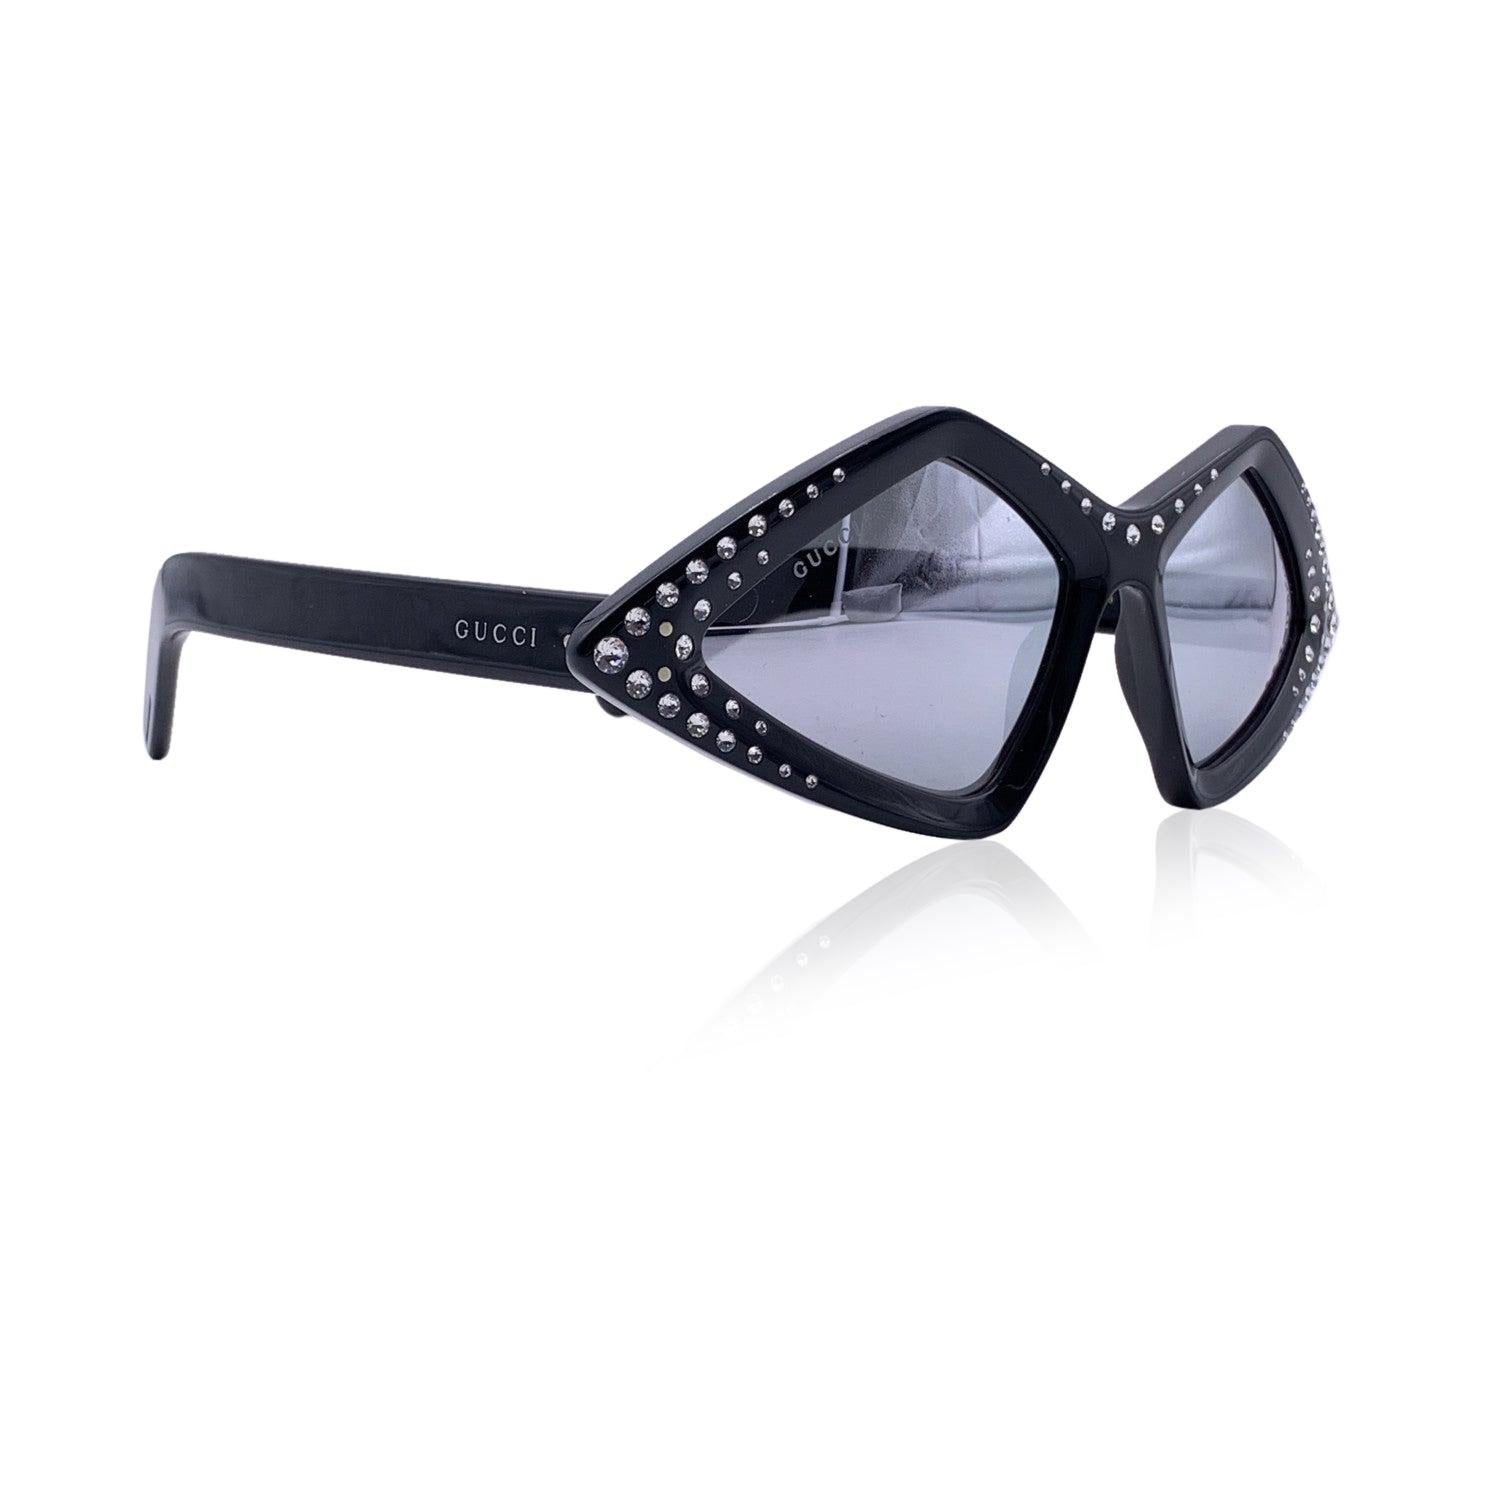 Gucci Sonnenbrille Modell GG0496S - 004. Schwarze, mit Kristallen besetzte Acetatfassung. Gucci Unterschriften auf den Schläfen. Original verspiegelte graue Gläser. Mod & refs: GG0496S - 004 - 59/18 - 145. Hergestellt in Italien Details MATERIAL: